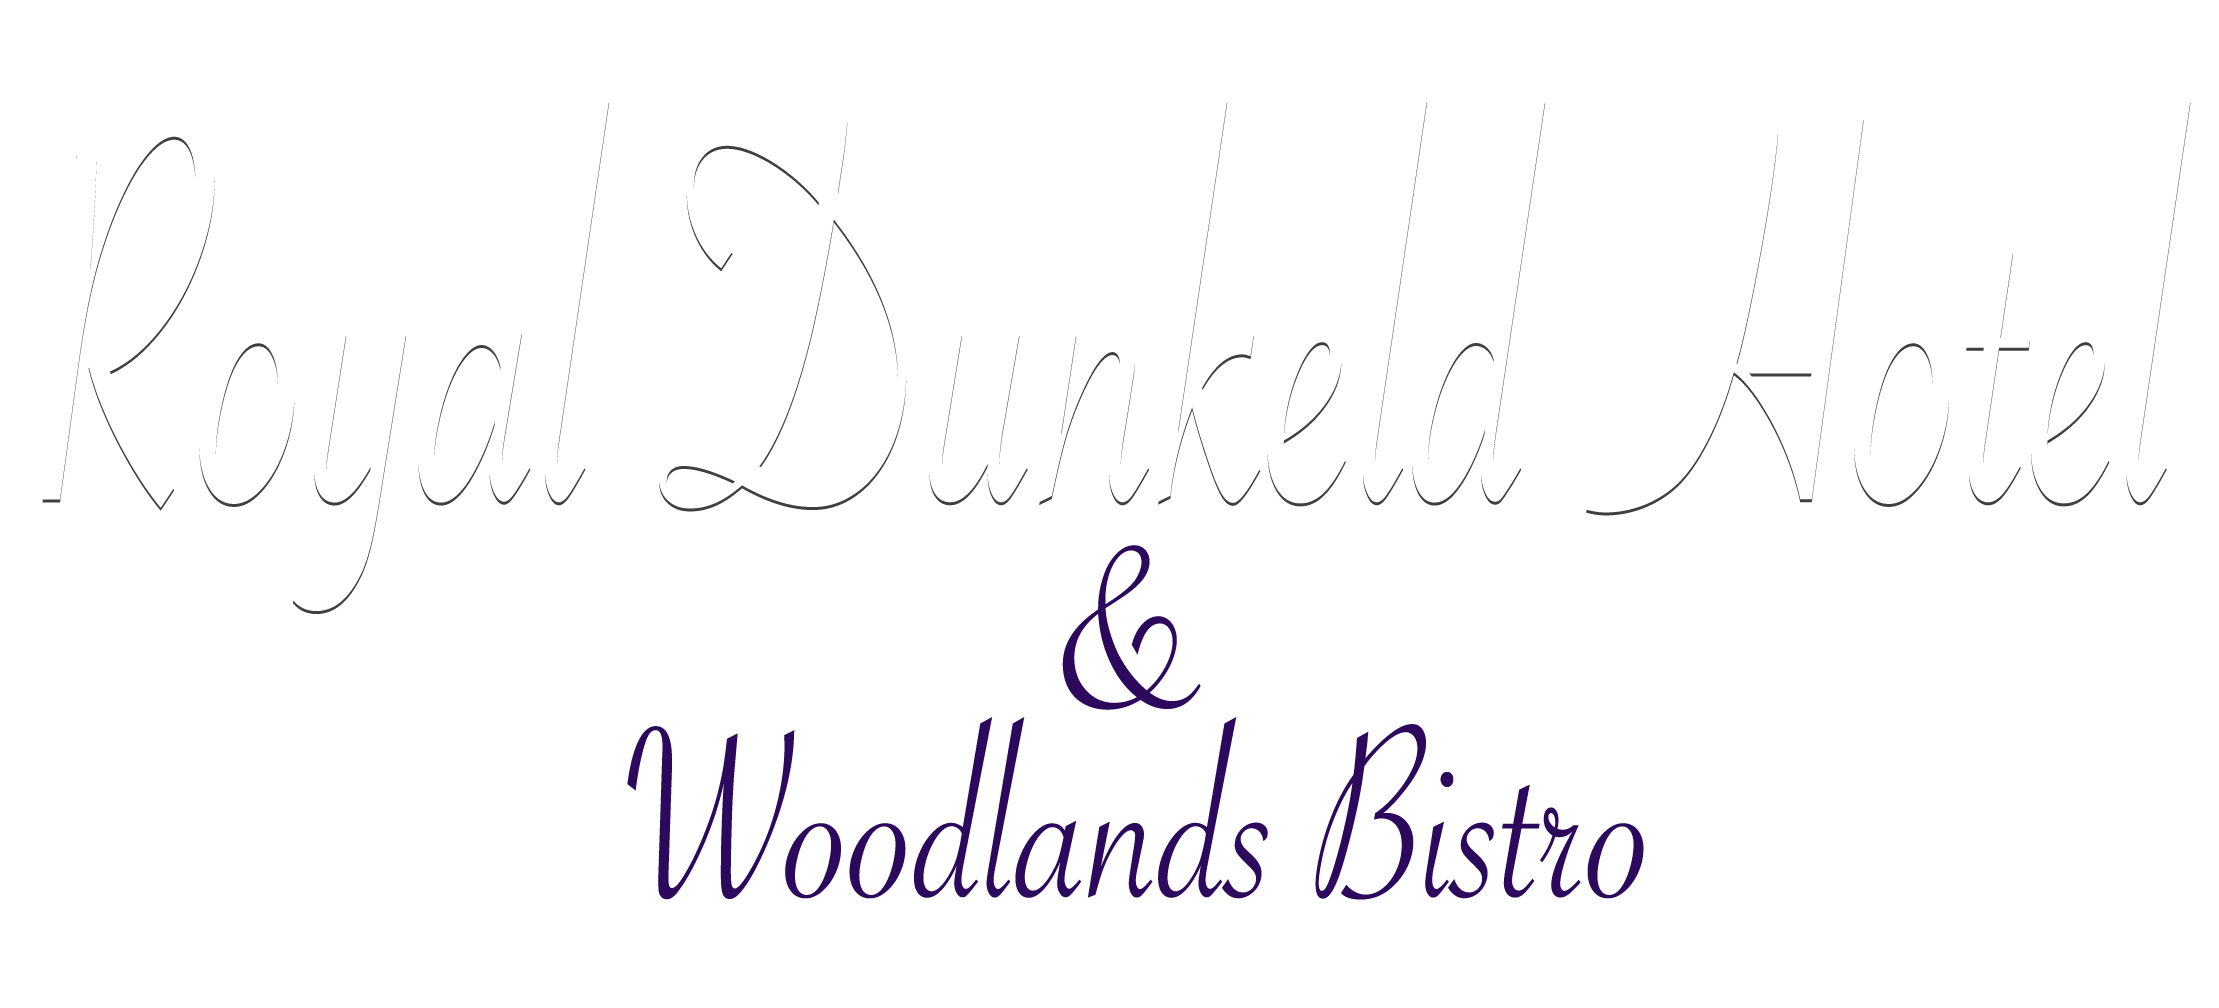 Royal Dunkeld Hotel & Woodlands Bistro